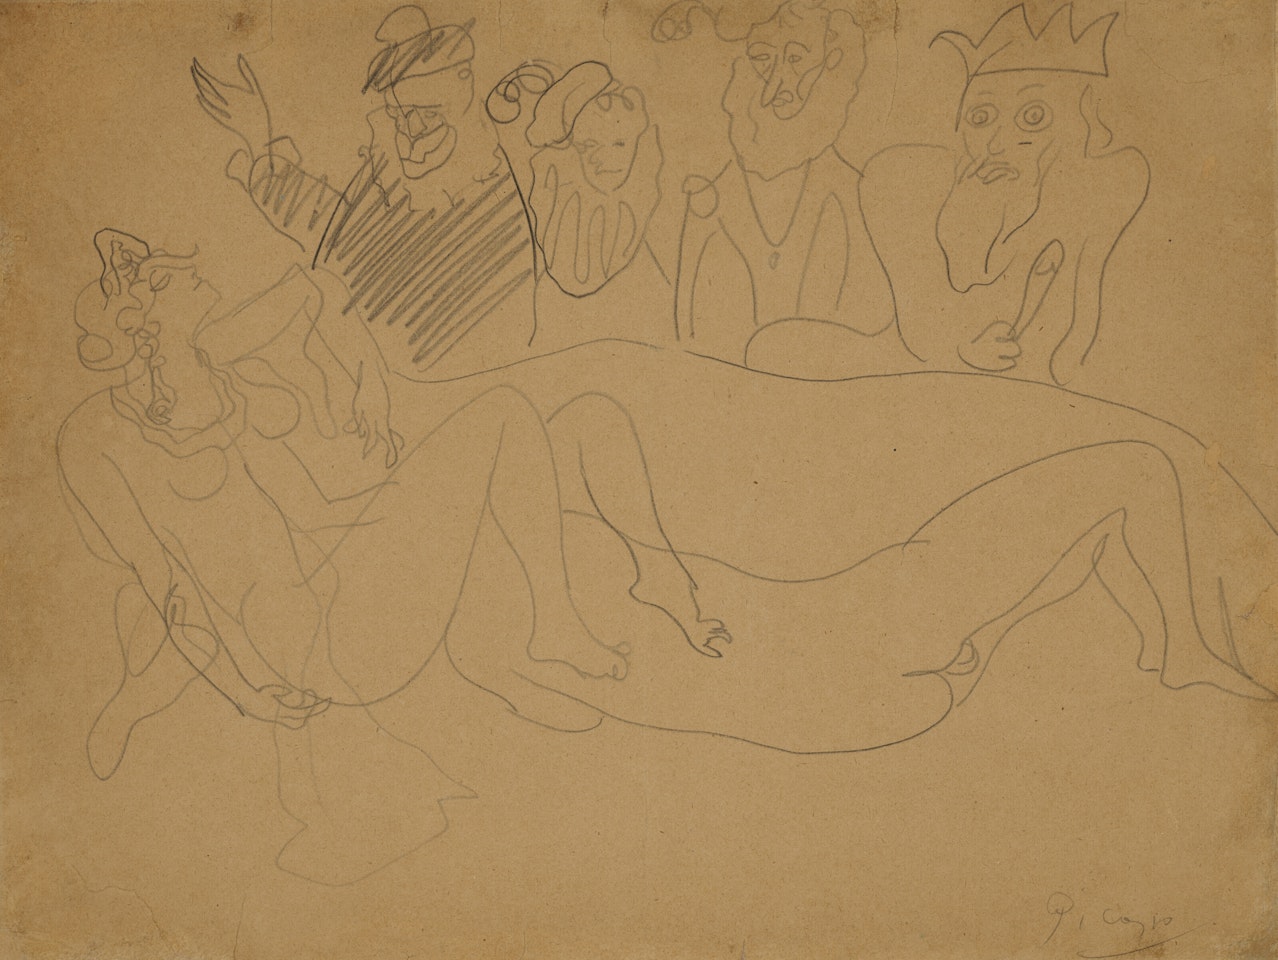 Les Spectateurs by Pablo Picasso